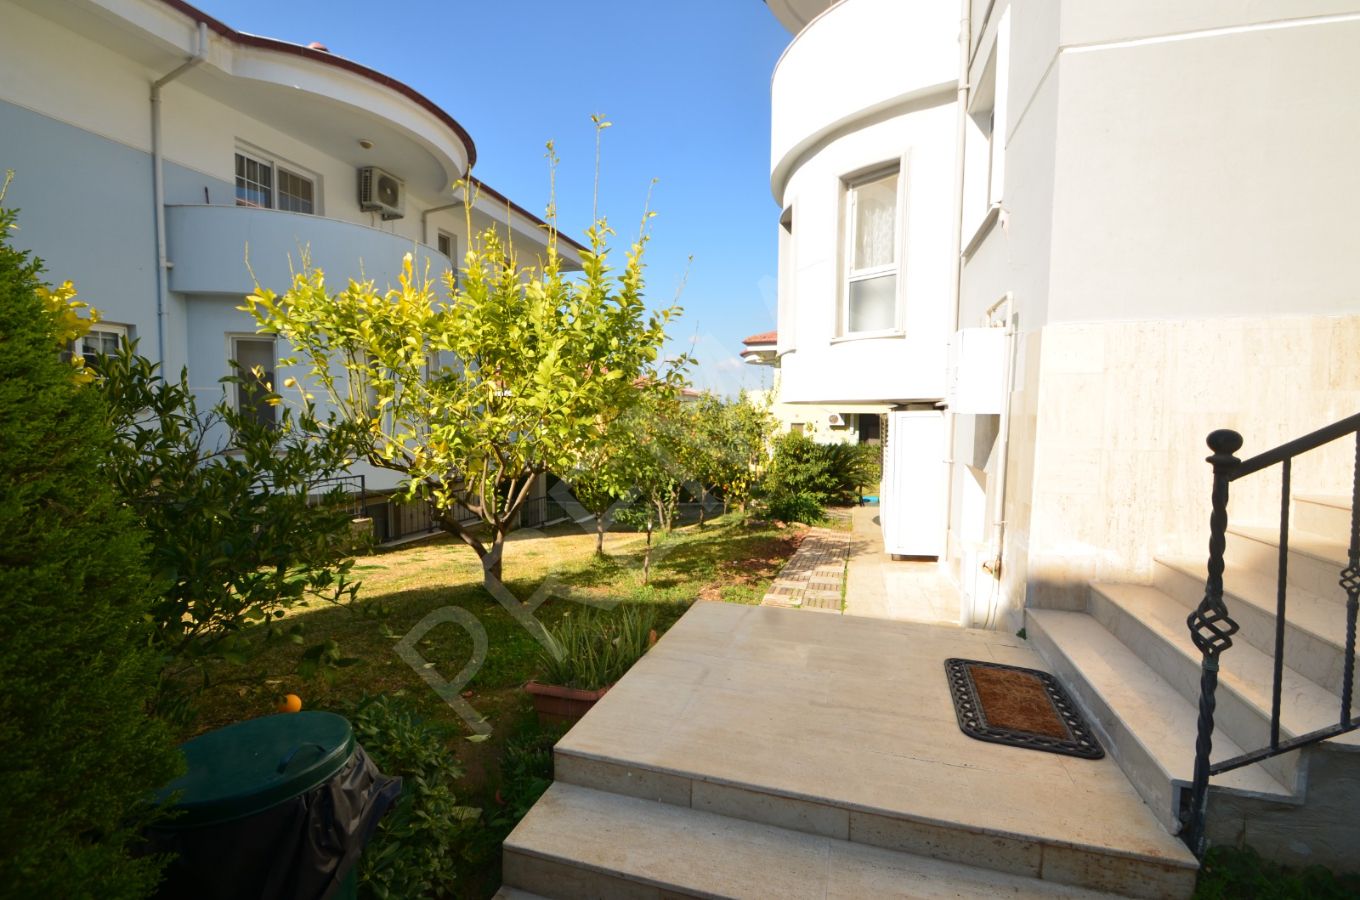 Adana Kabasakal 'da Güvenli Kaliteli Muhteşem Site İçinde Villa